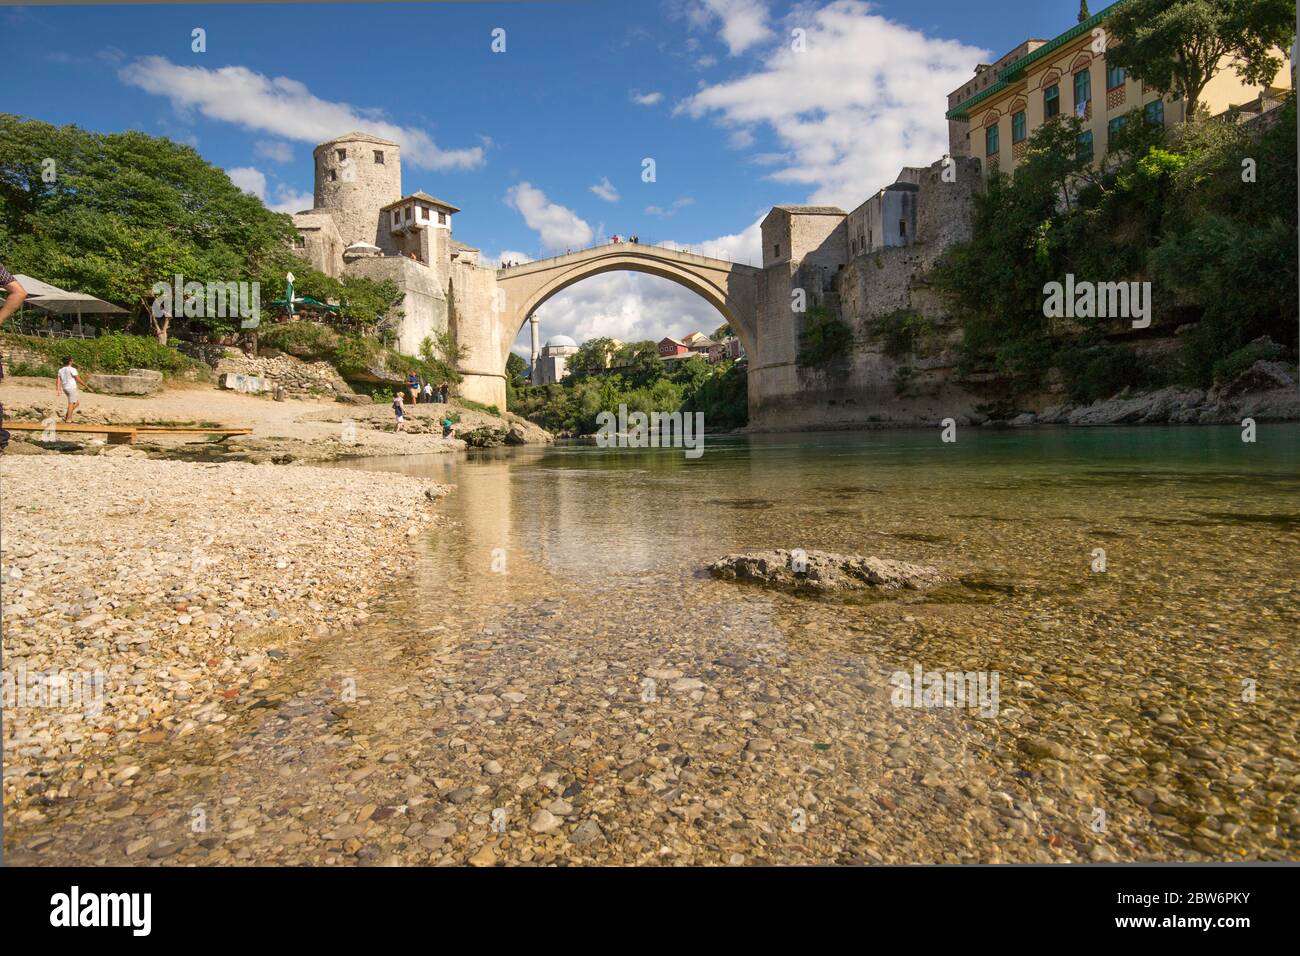 Stari MOST, également connu sous le nom de Mostar Bridge, est un pont ottoman reconstruit du XVIe siècle dans la ville de Mostar en Bosnie Banque D'Images